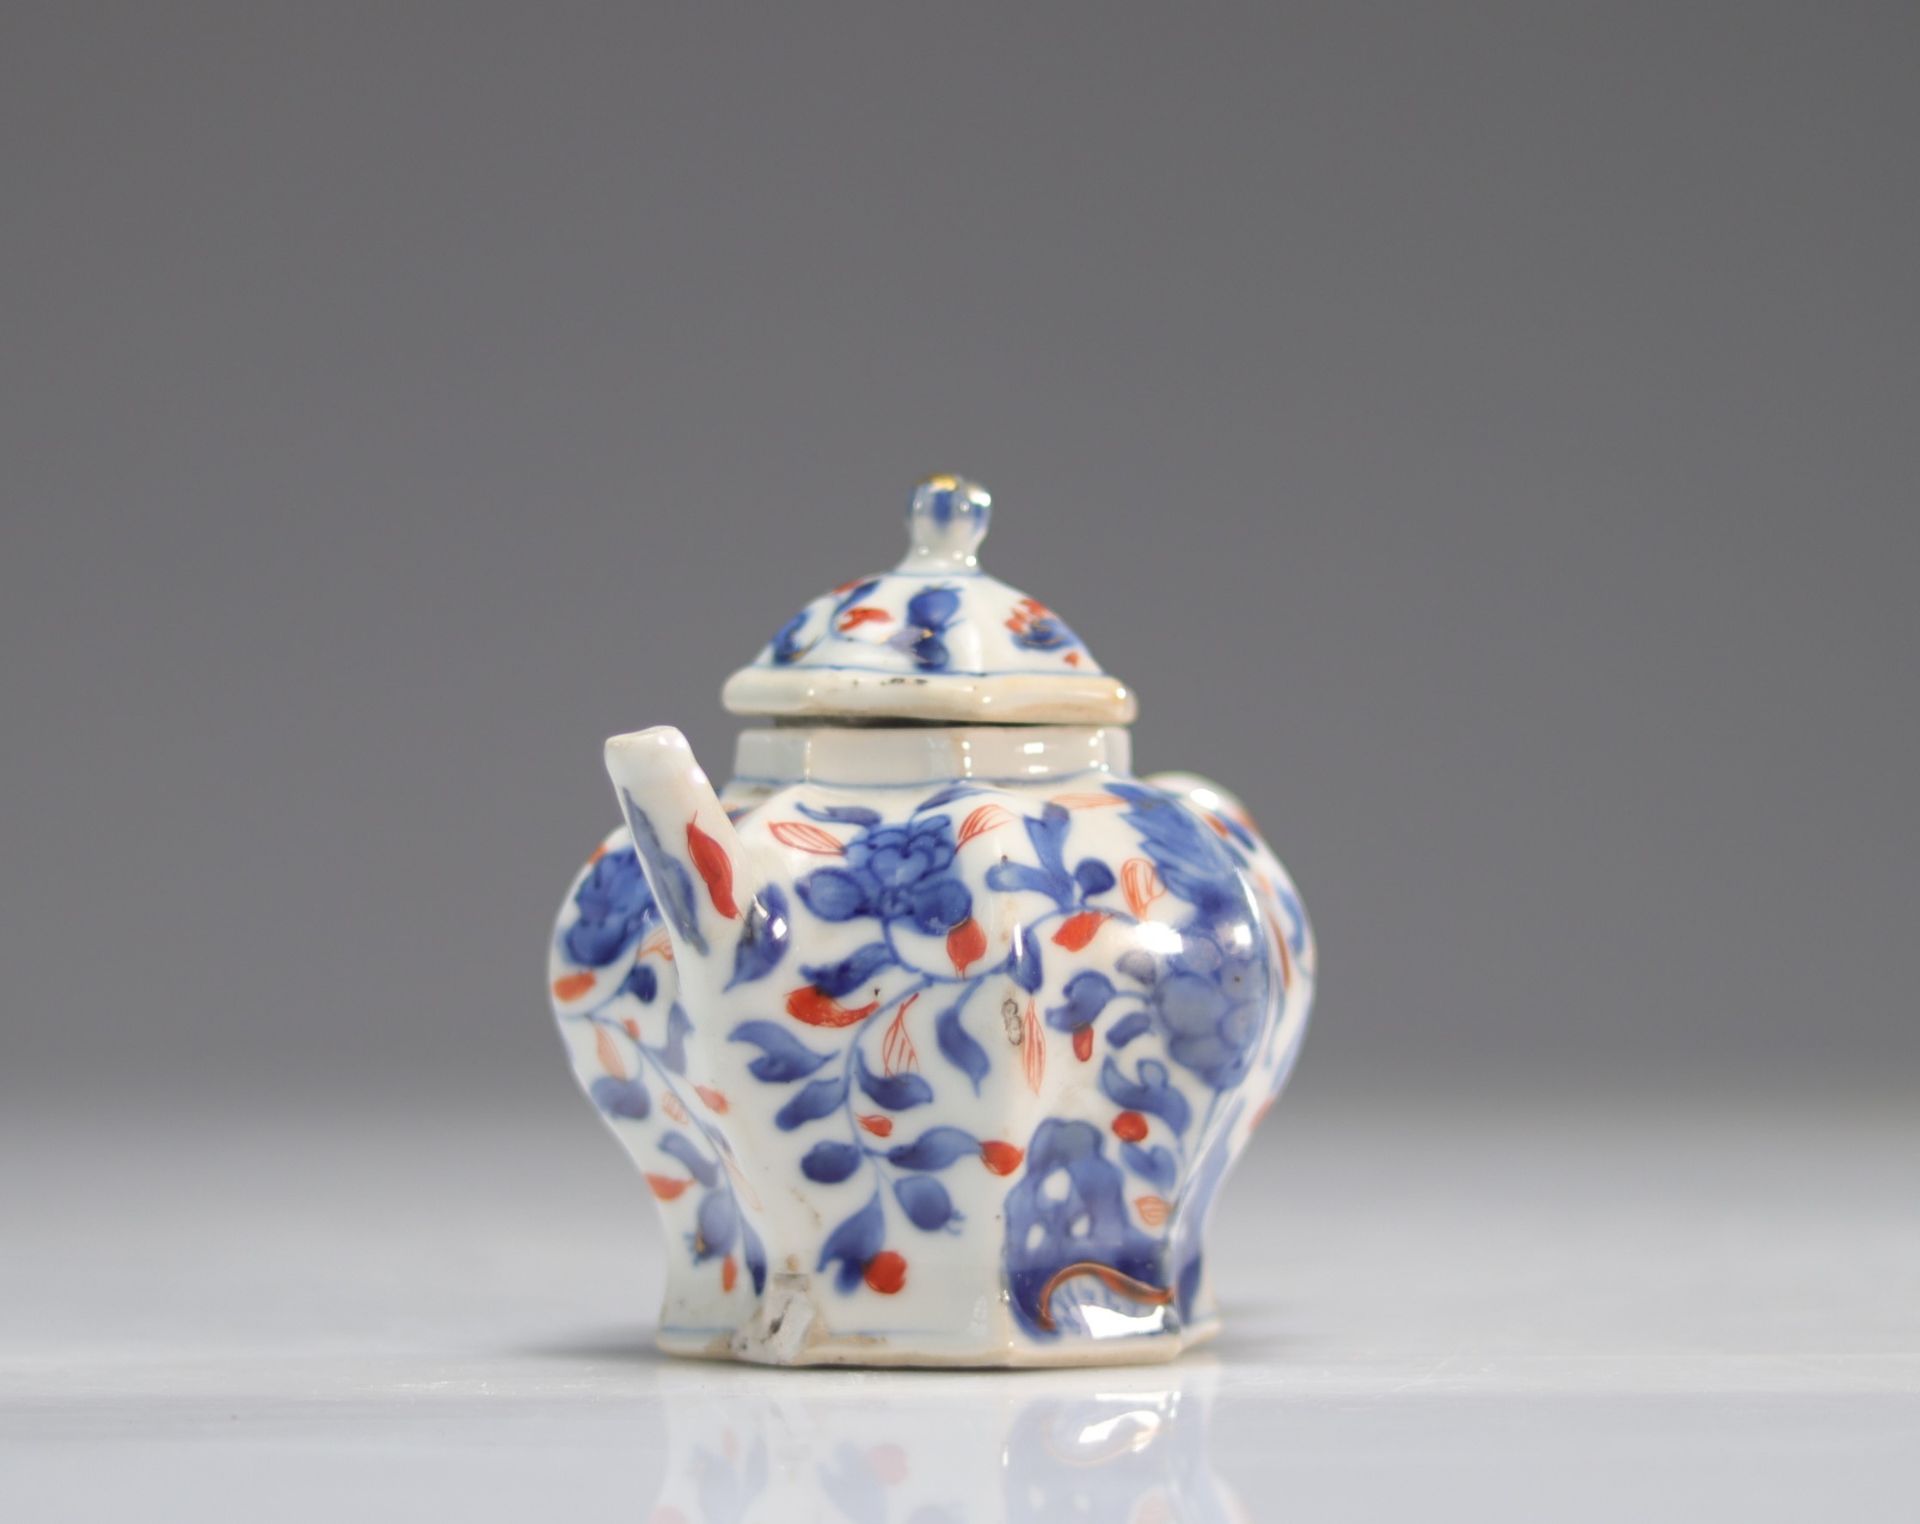 Kangxi period teapot - imari export - China - Image 4 of 5